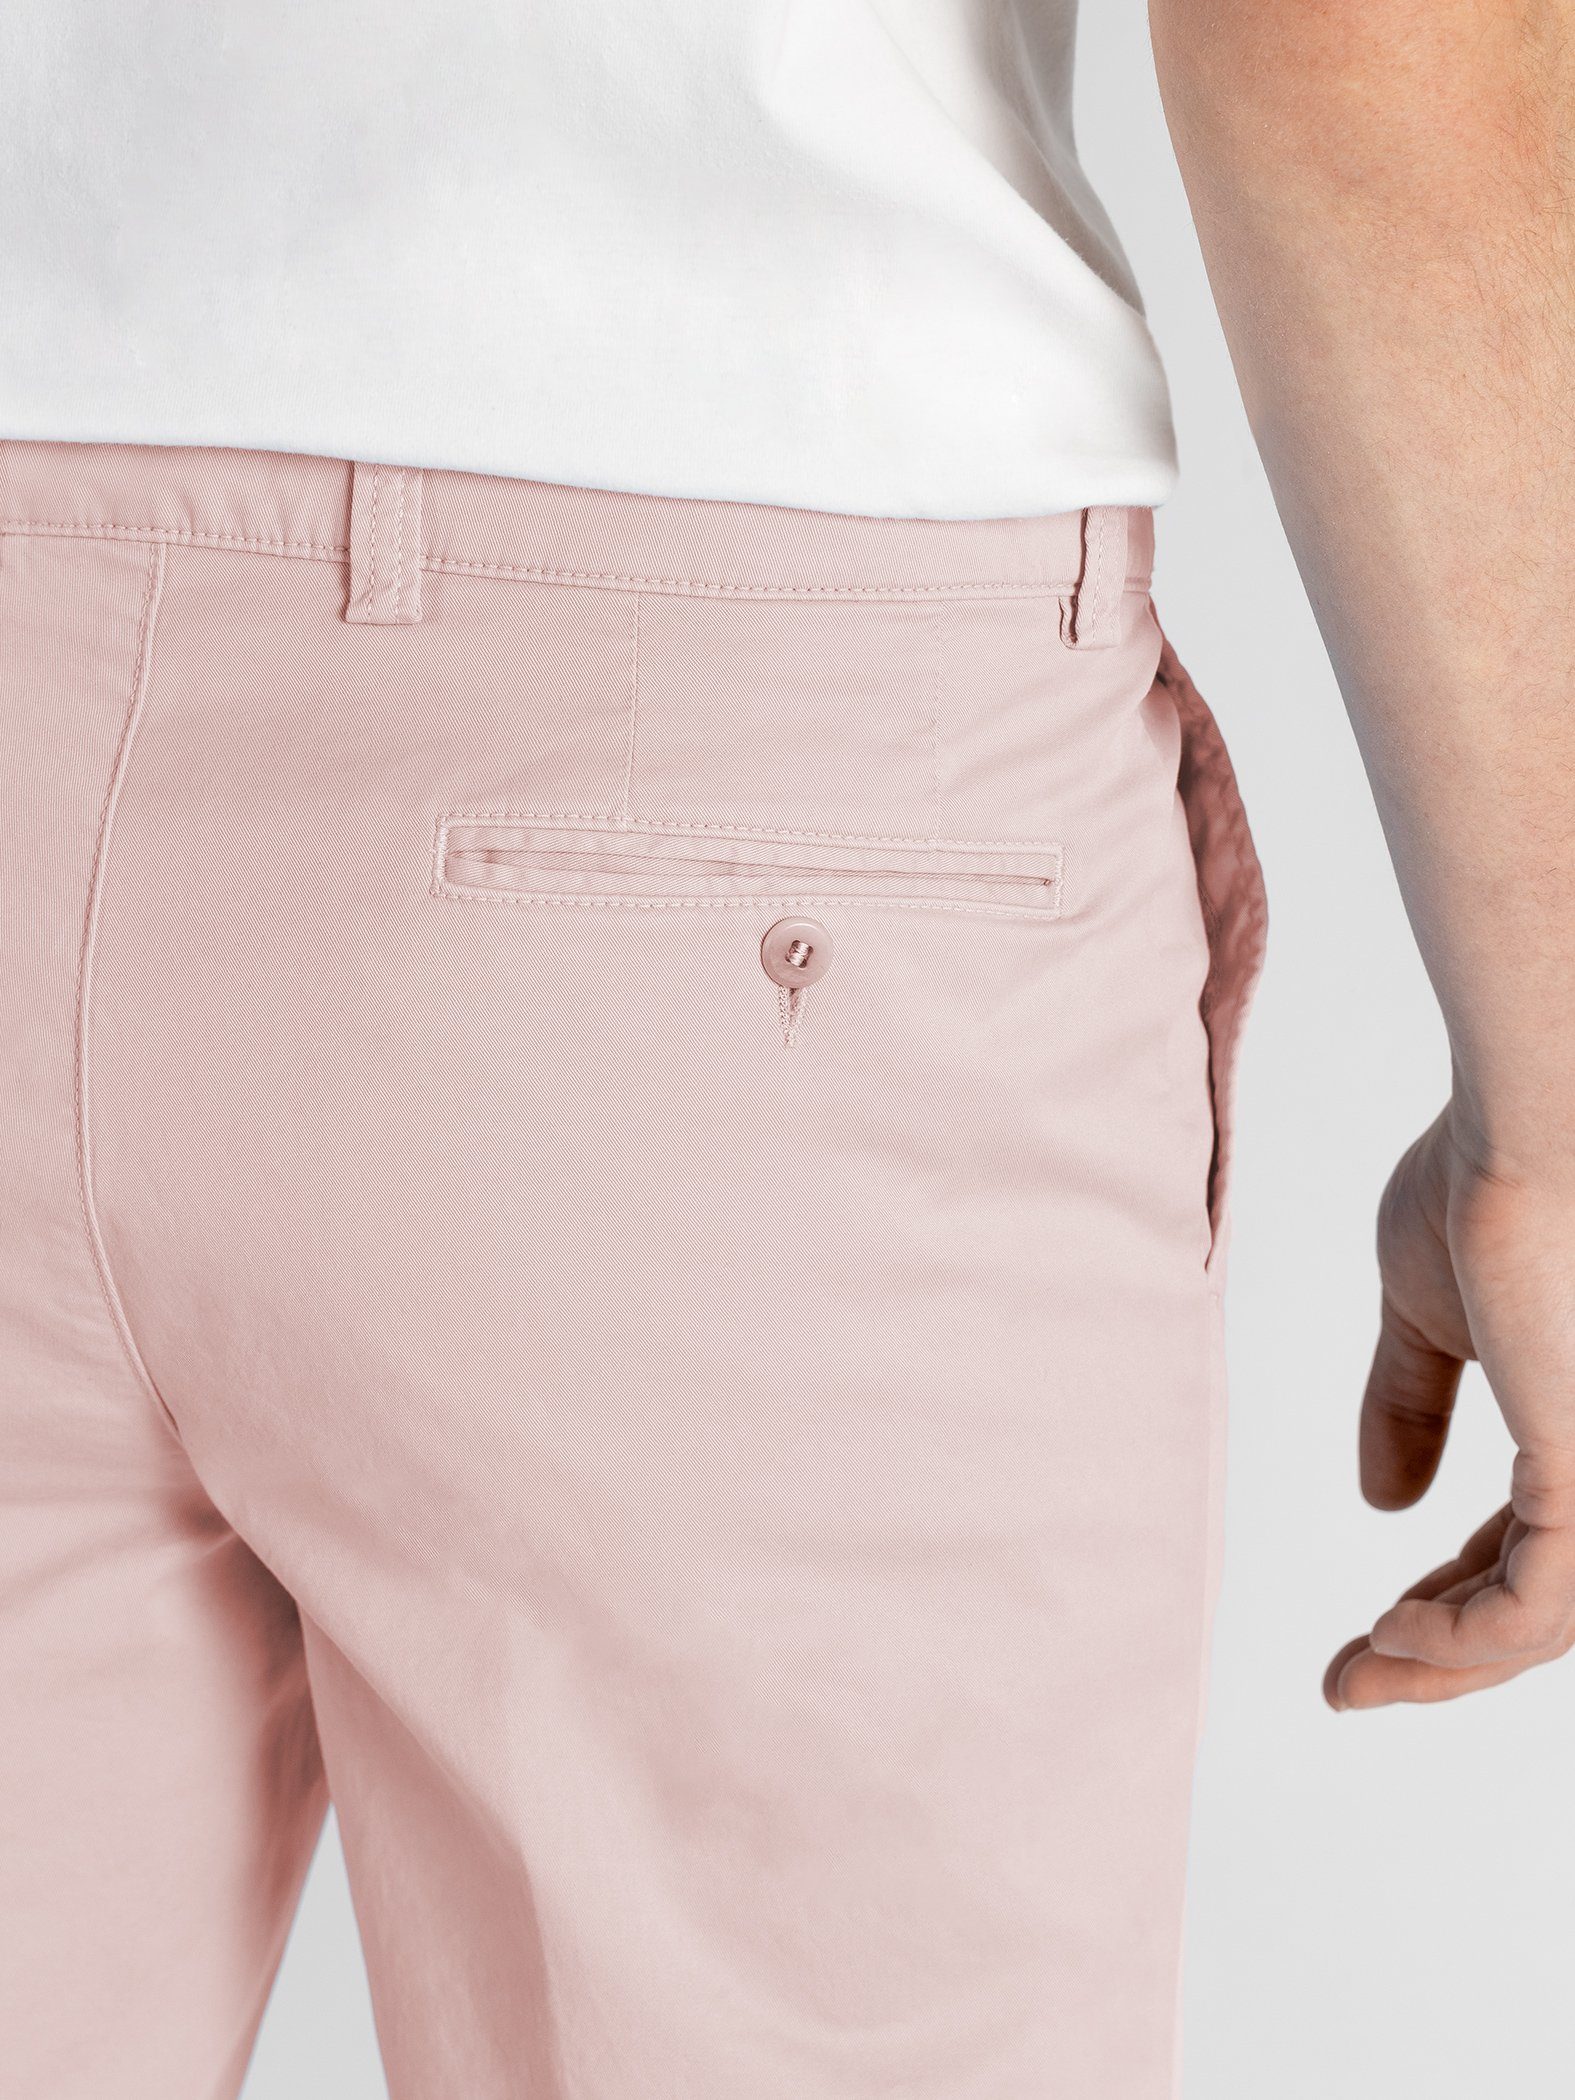 Shorts Bund, GOTS-zertifiziert rosa elastischem TwoMates Shorts mit Farbauswahl,